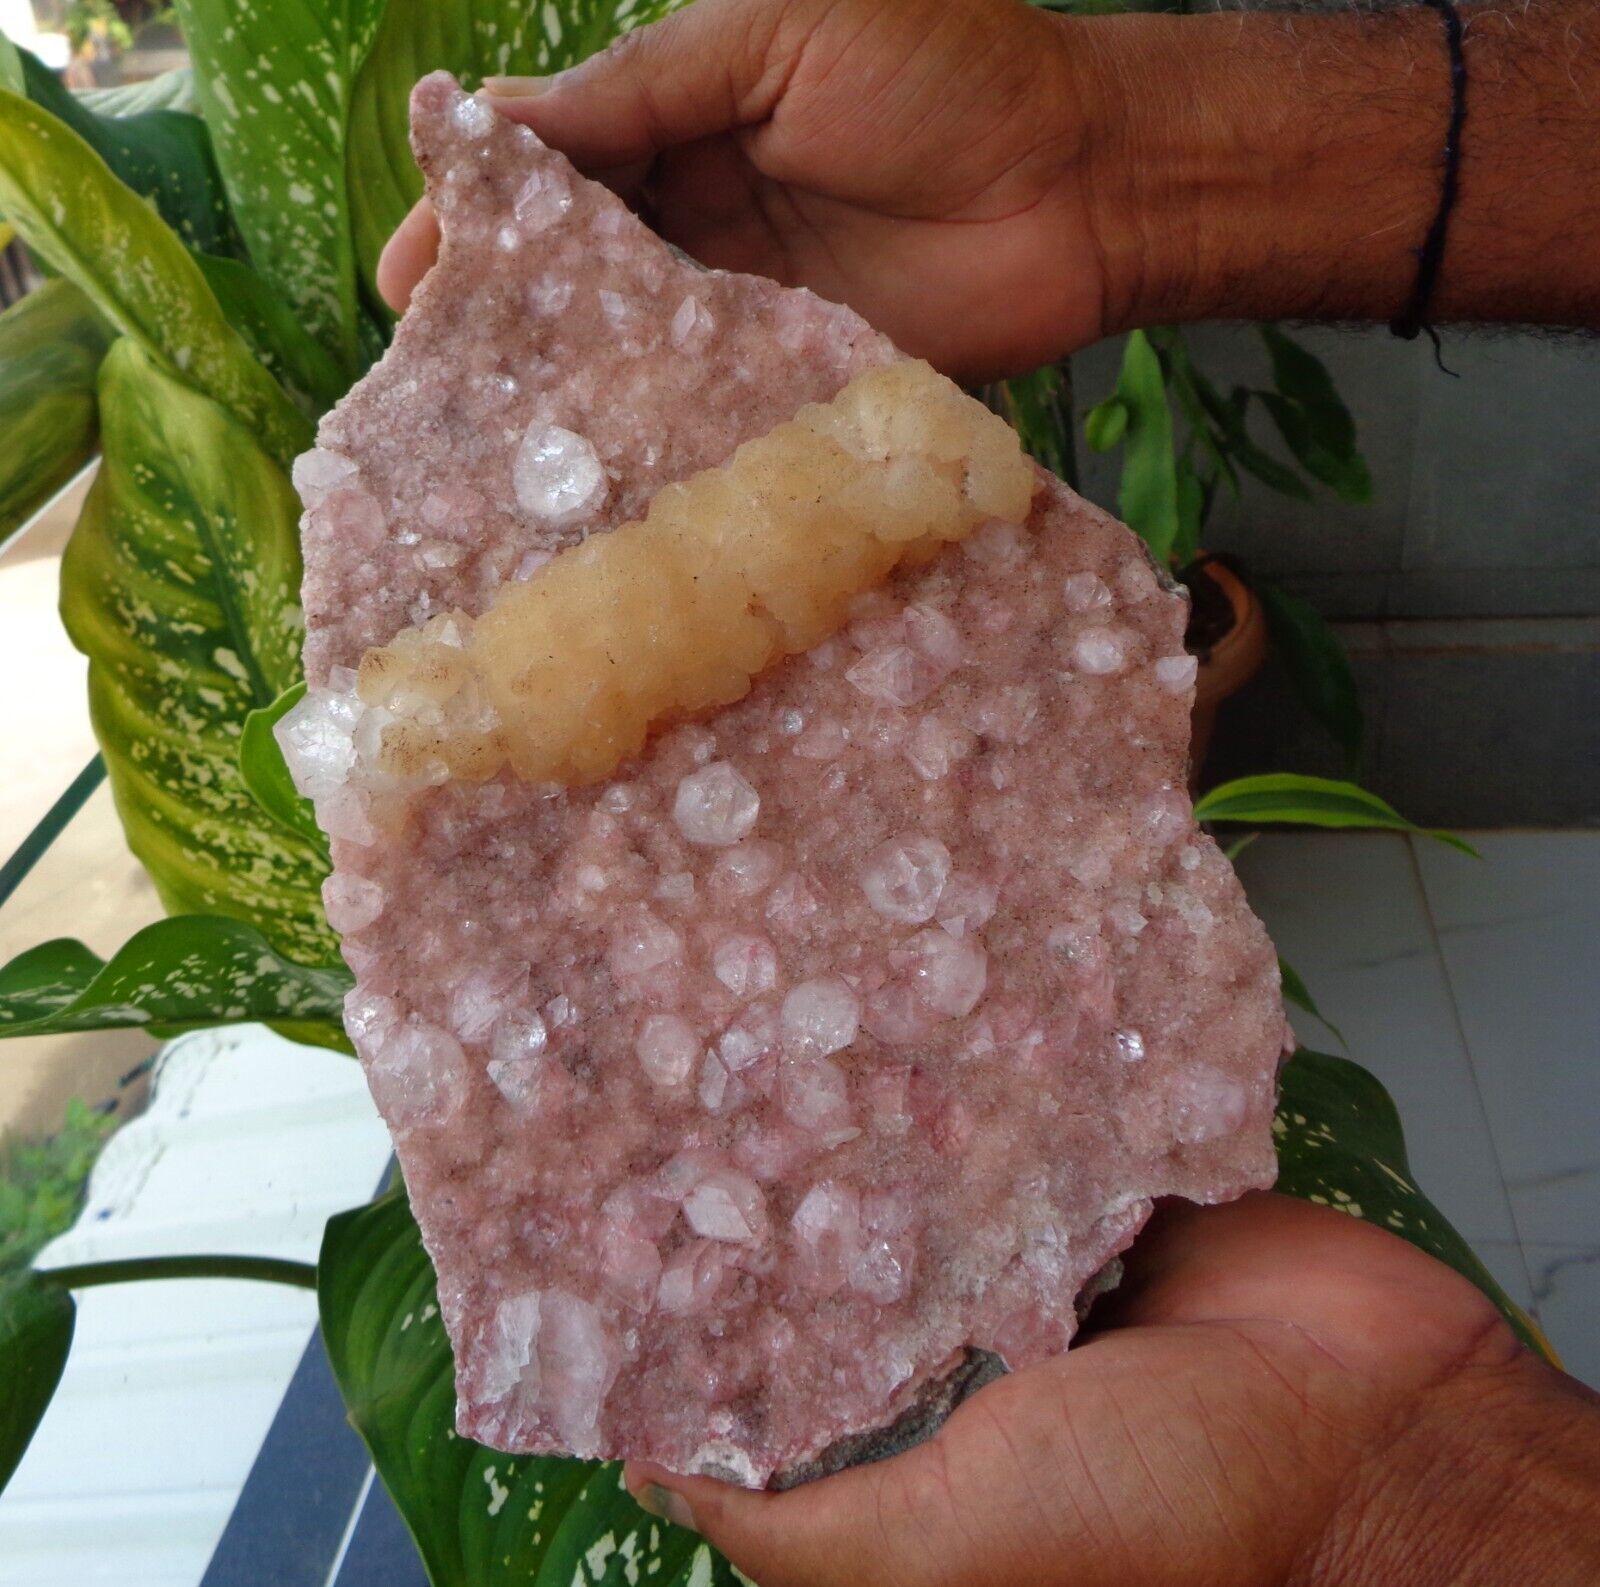 Apophyllite Crystals w/ Stilbite On Light Pink Matrix Minerals Specimen